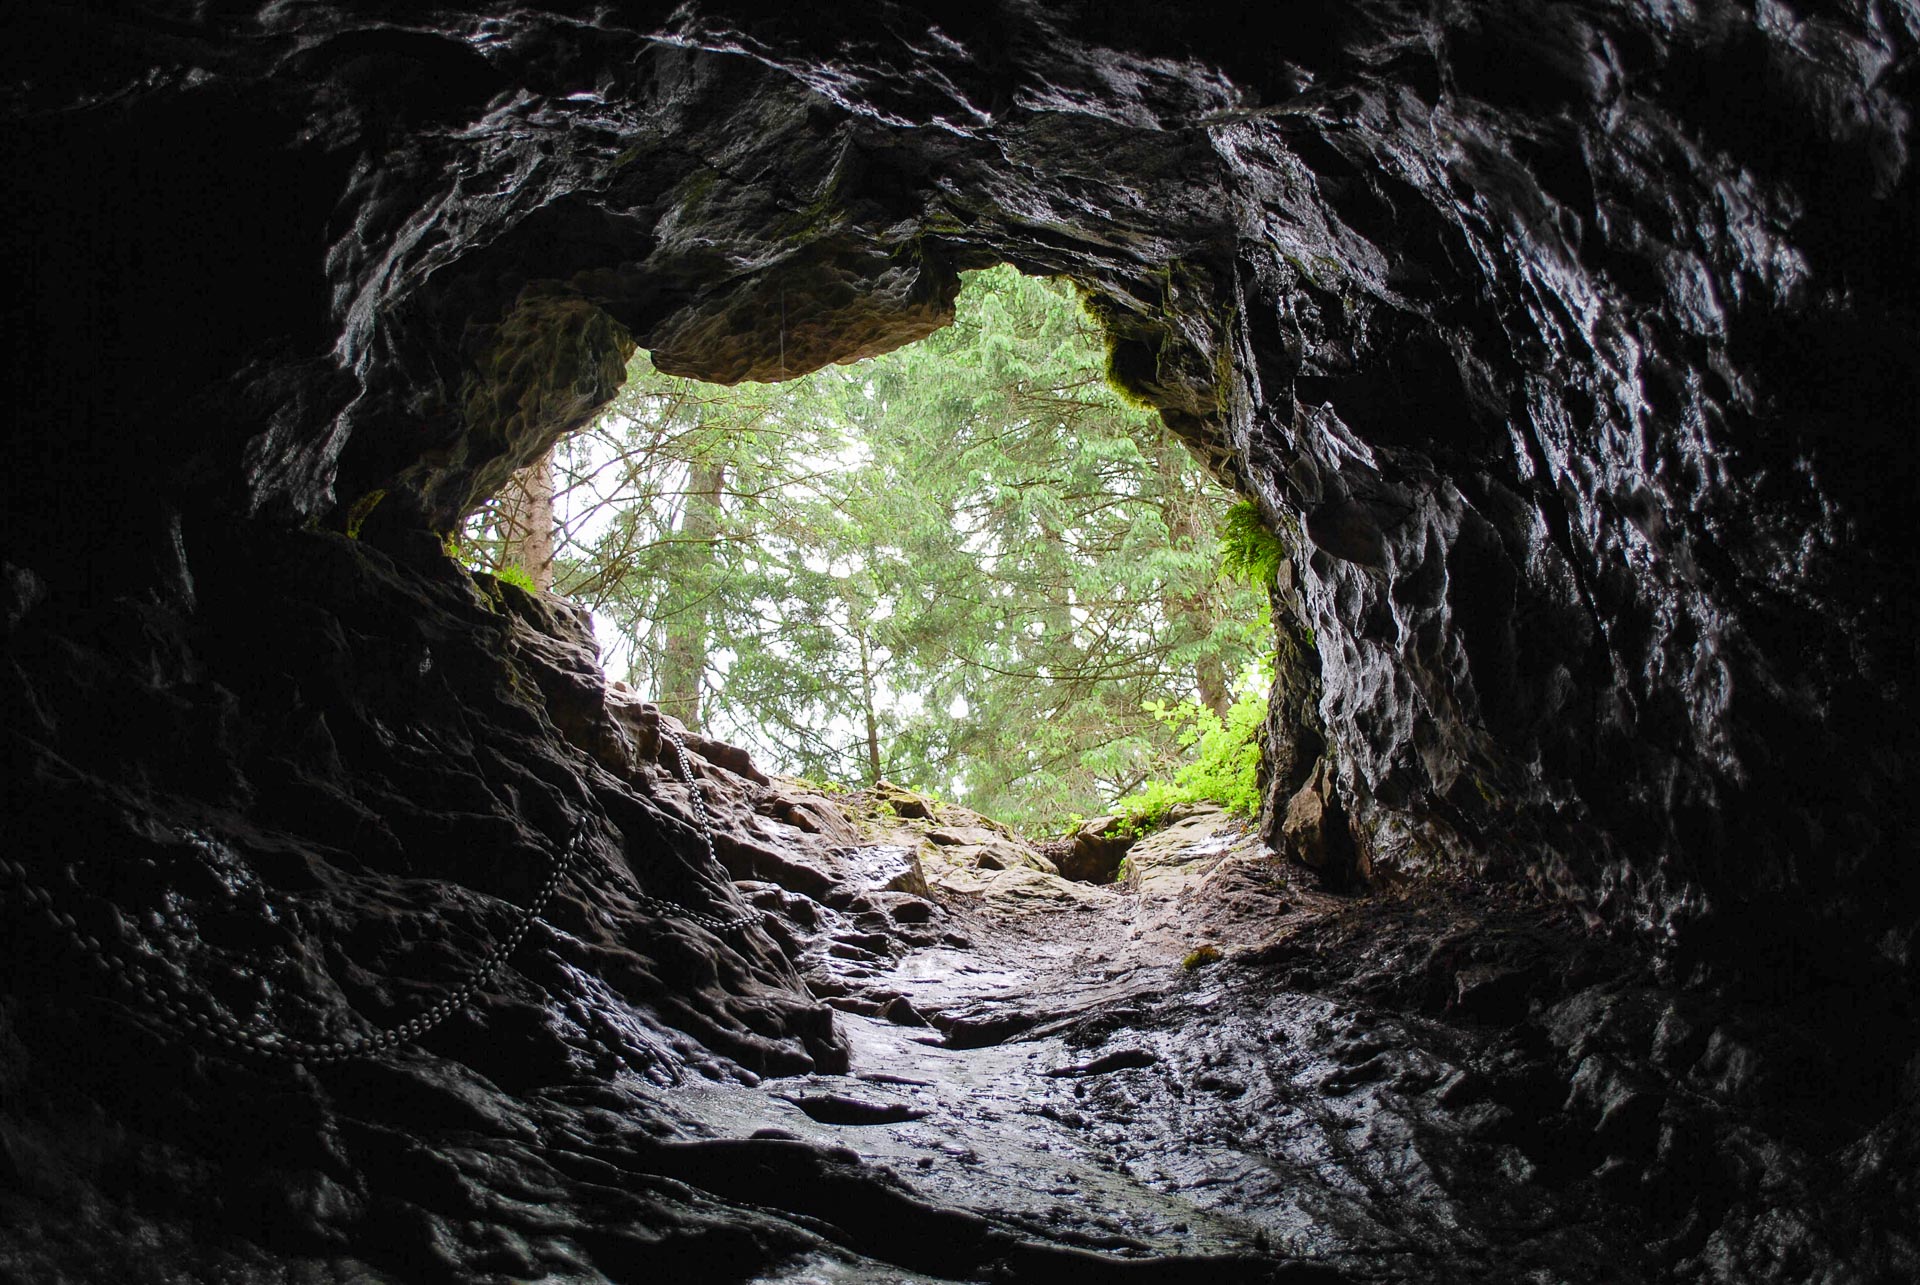 Jaskinia Smocza Jama